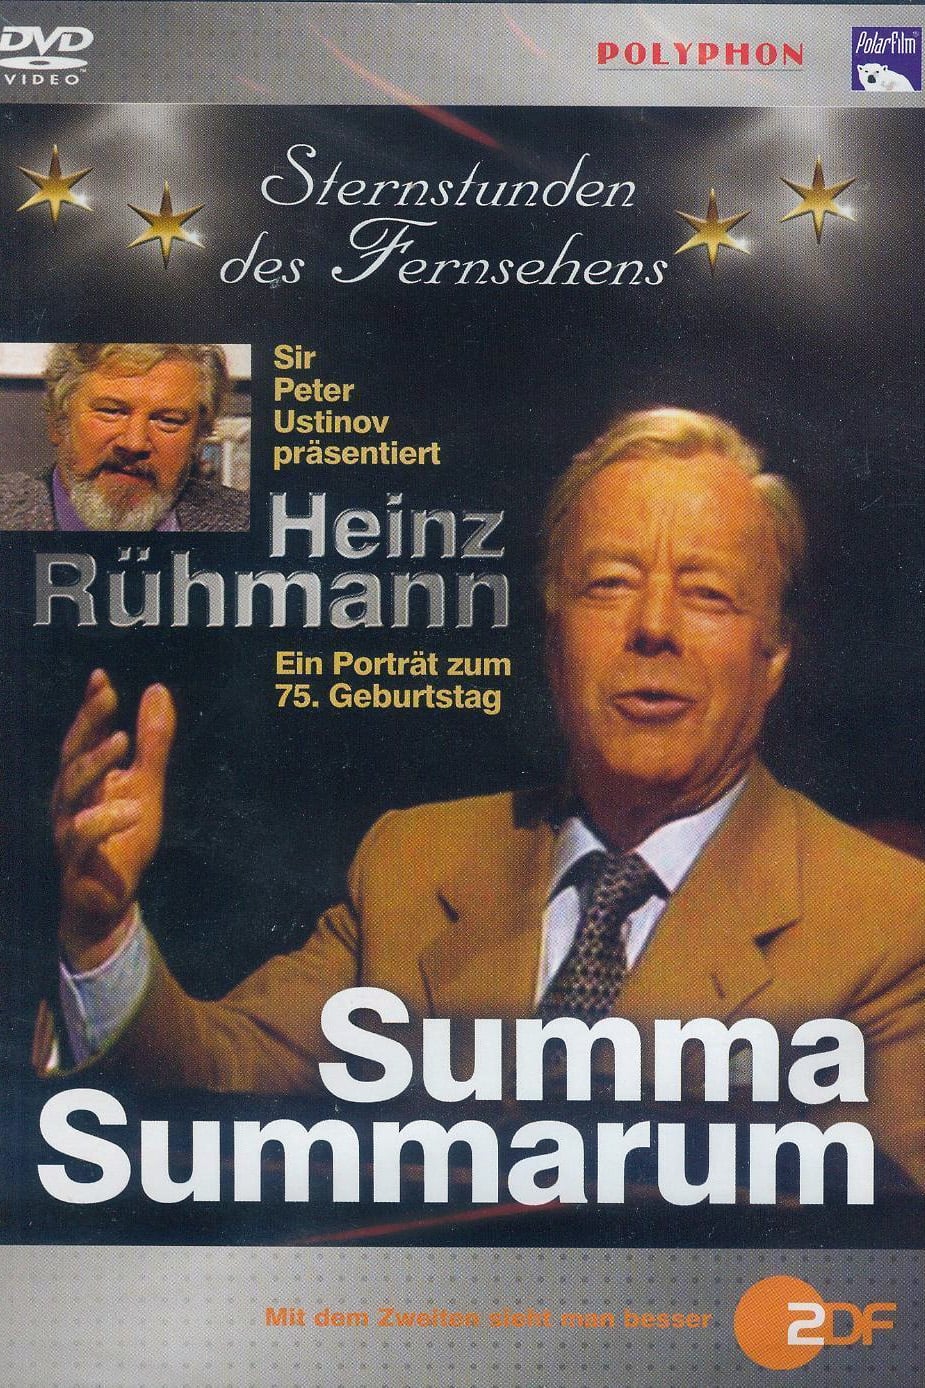 Summa Summarum - Sondersendung zu Heinz Rühmanns 75. Geburtstag